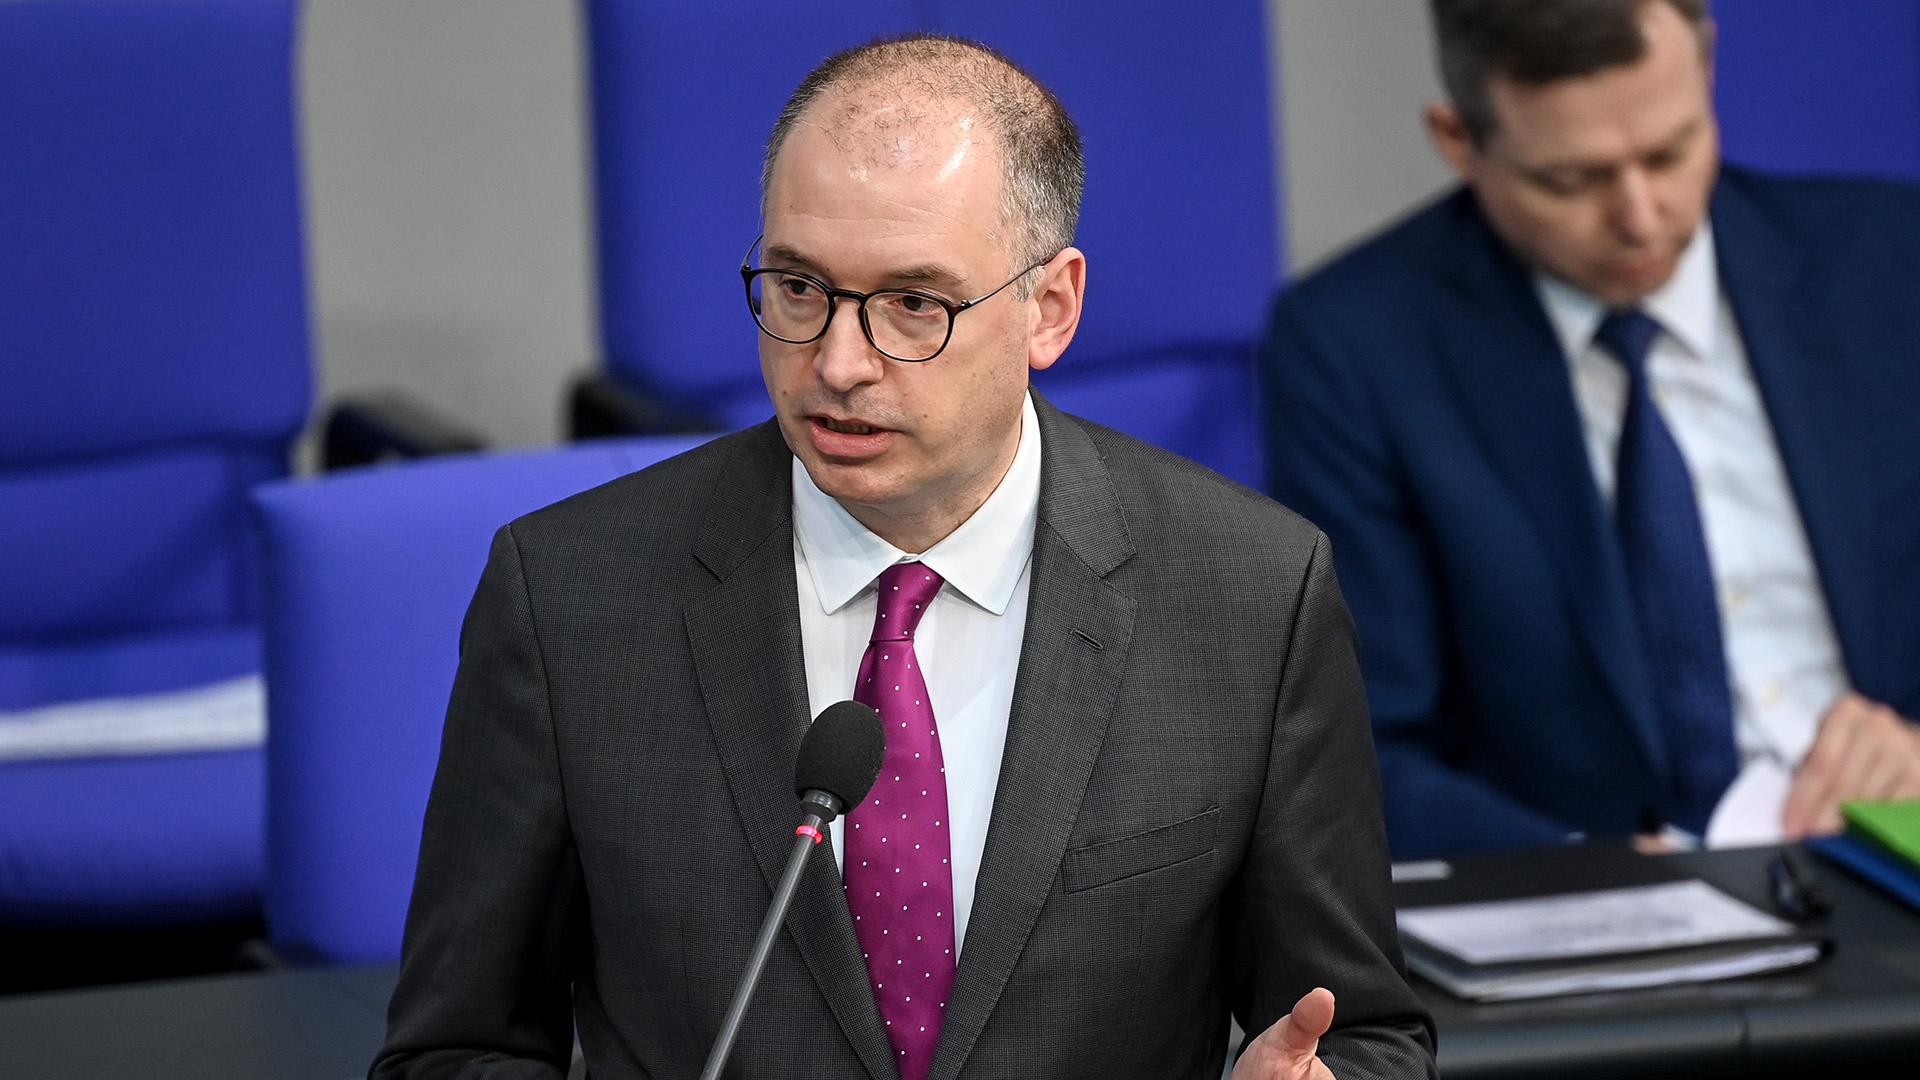 Niels Annen beantwortet im Bundestag Fragen zur US-Wahl | dpa